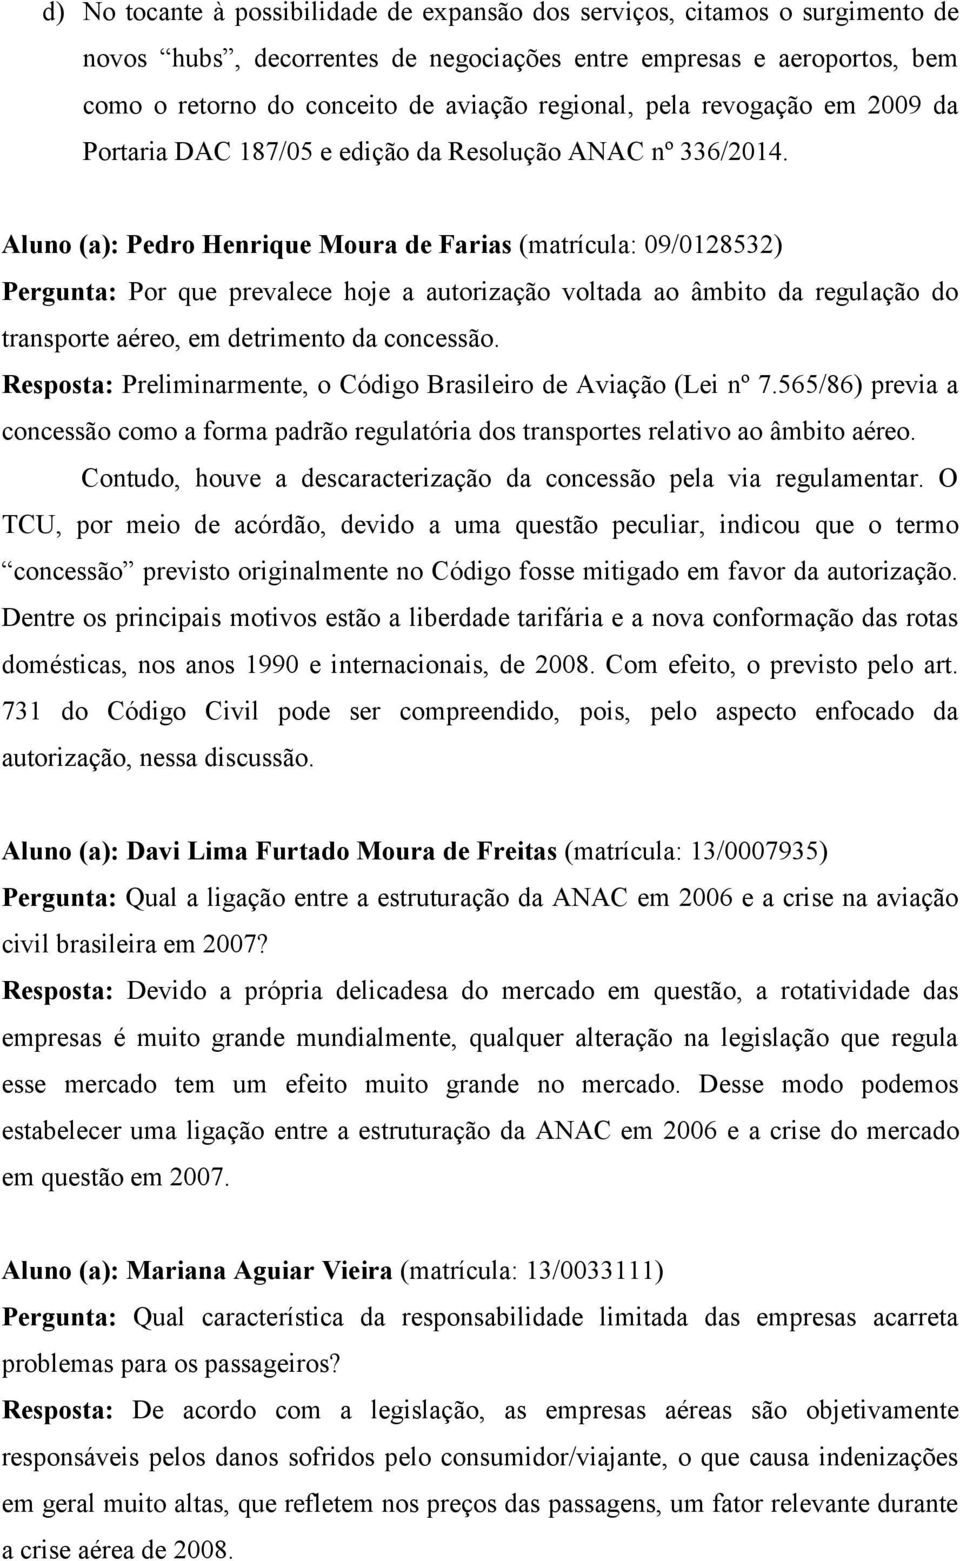 Aluno (a): Pedro Henrique Moura de Farias (matrícula: 09/0128532) Pergunta: Por que prevalece hoje a autorização voltada ao âmbito da regulação do transporte aéreo, em detrimento da concessão.